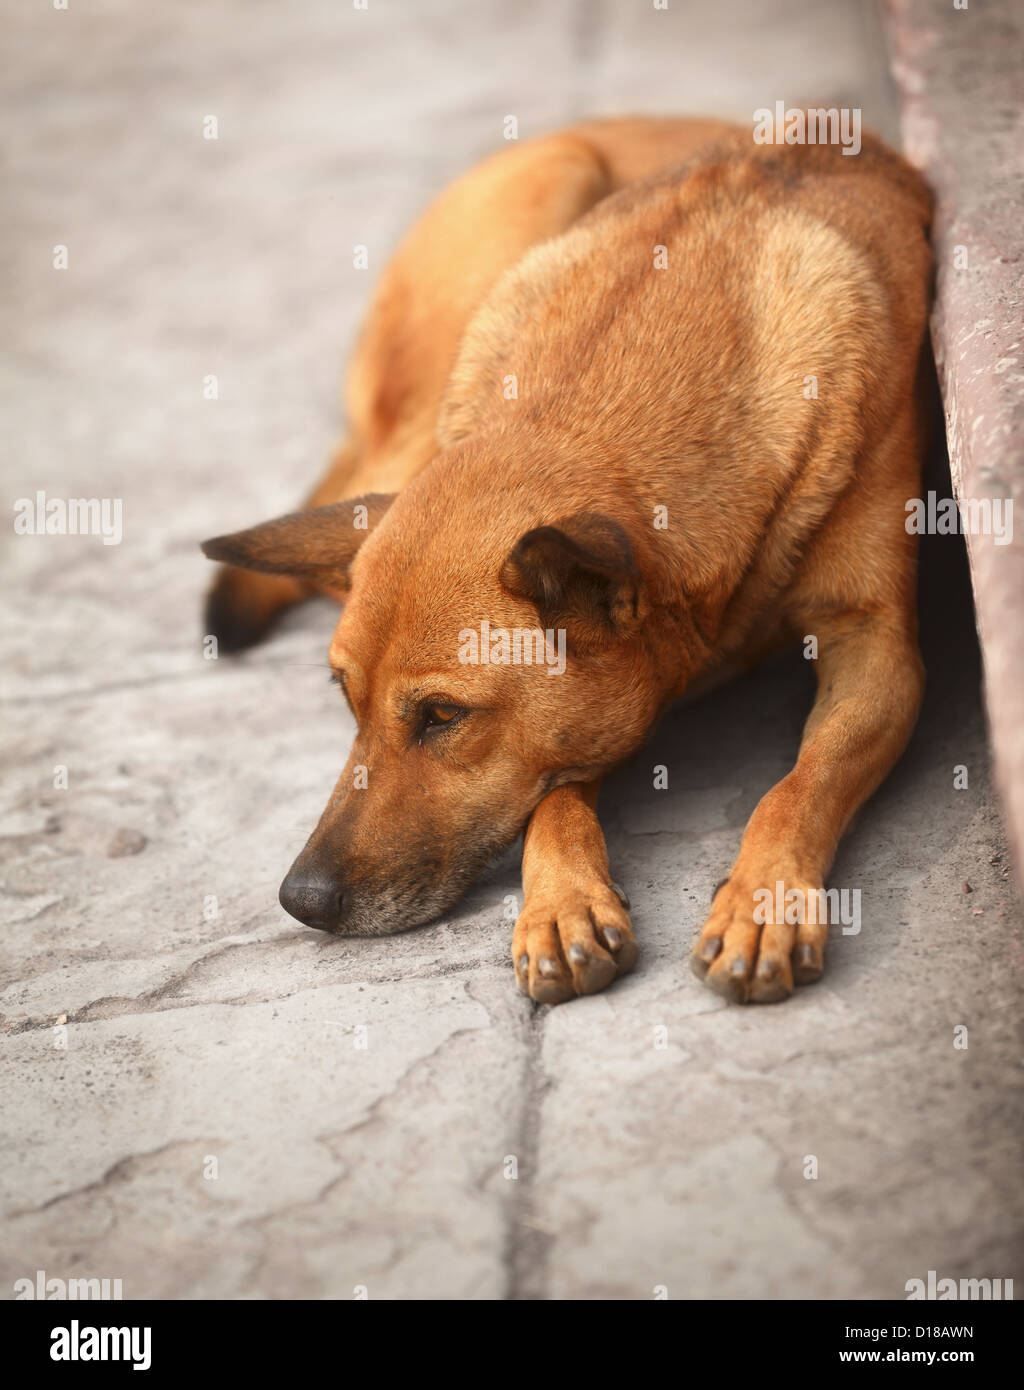 Les sans-abri le chien rouge reposant sur le trottoir Banque D'Images